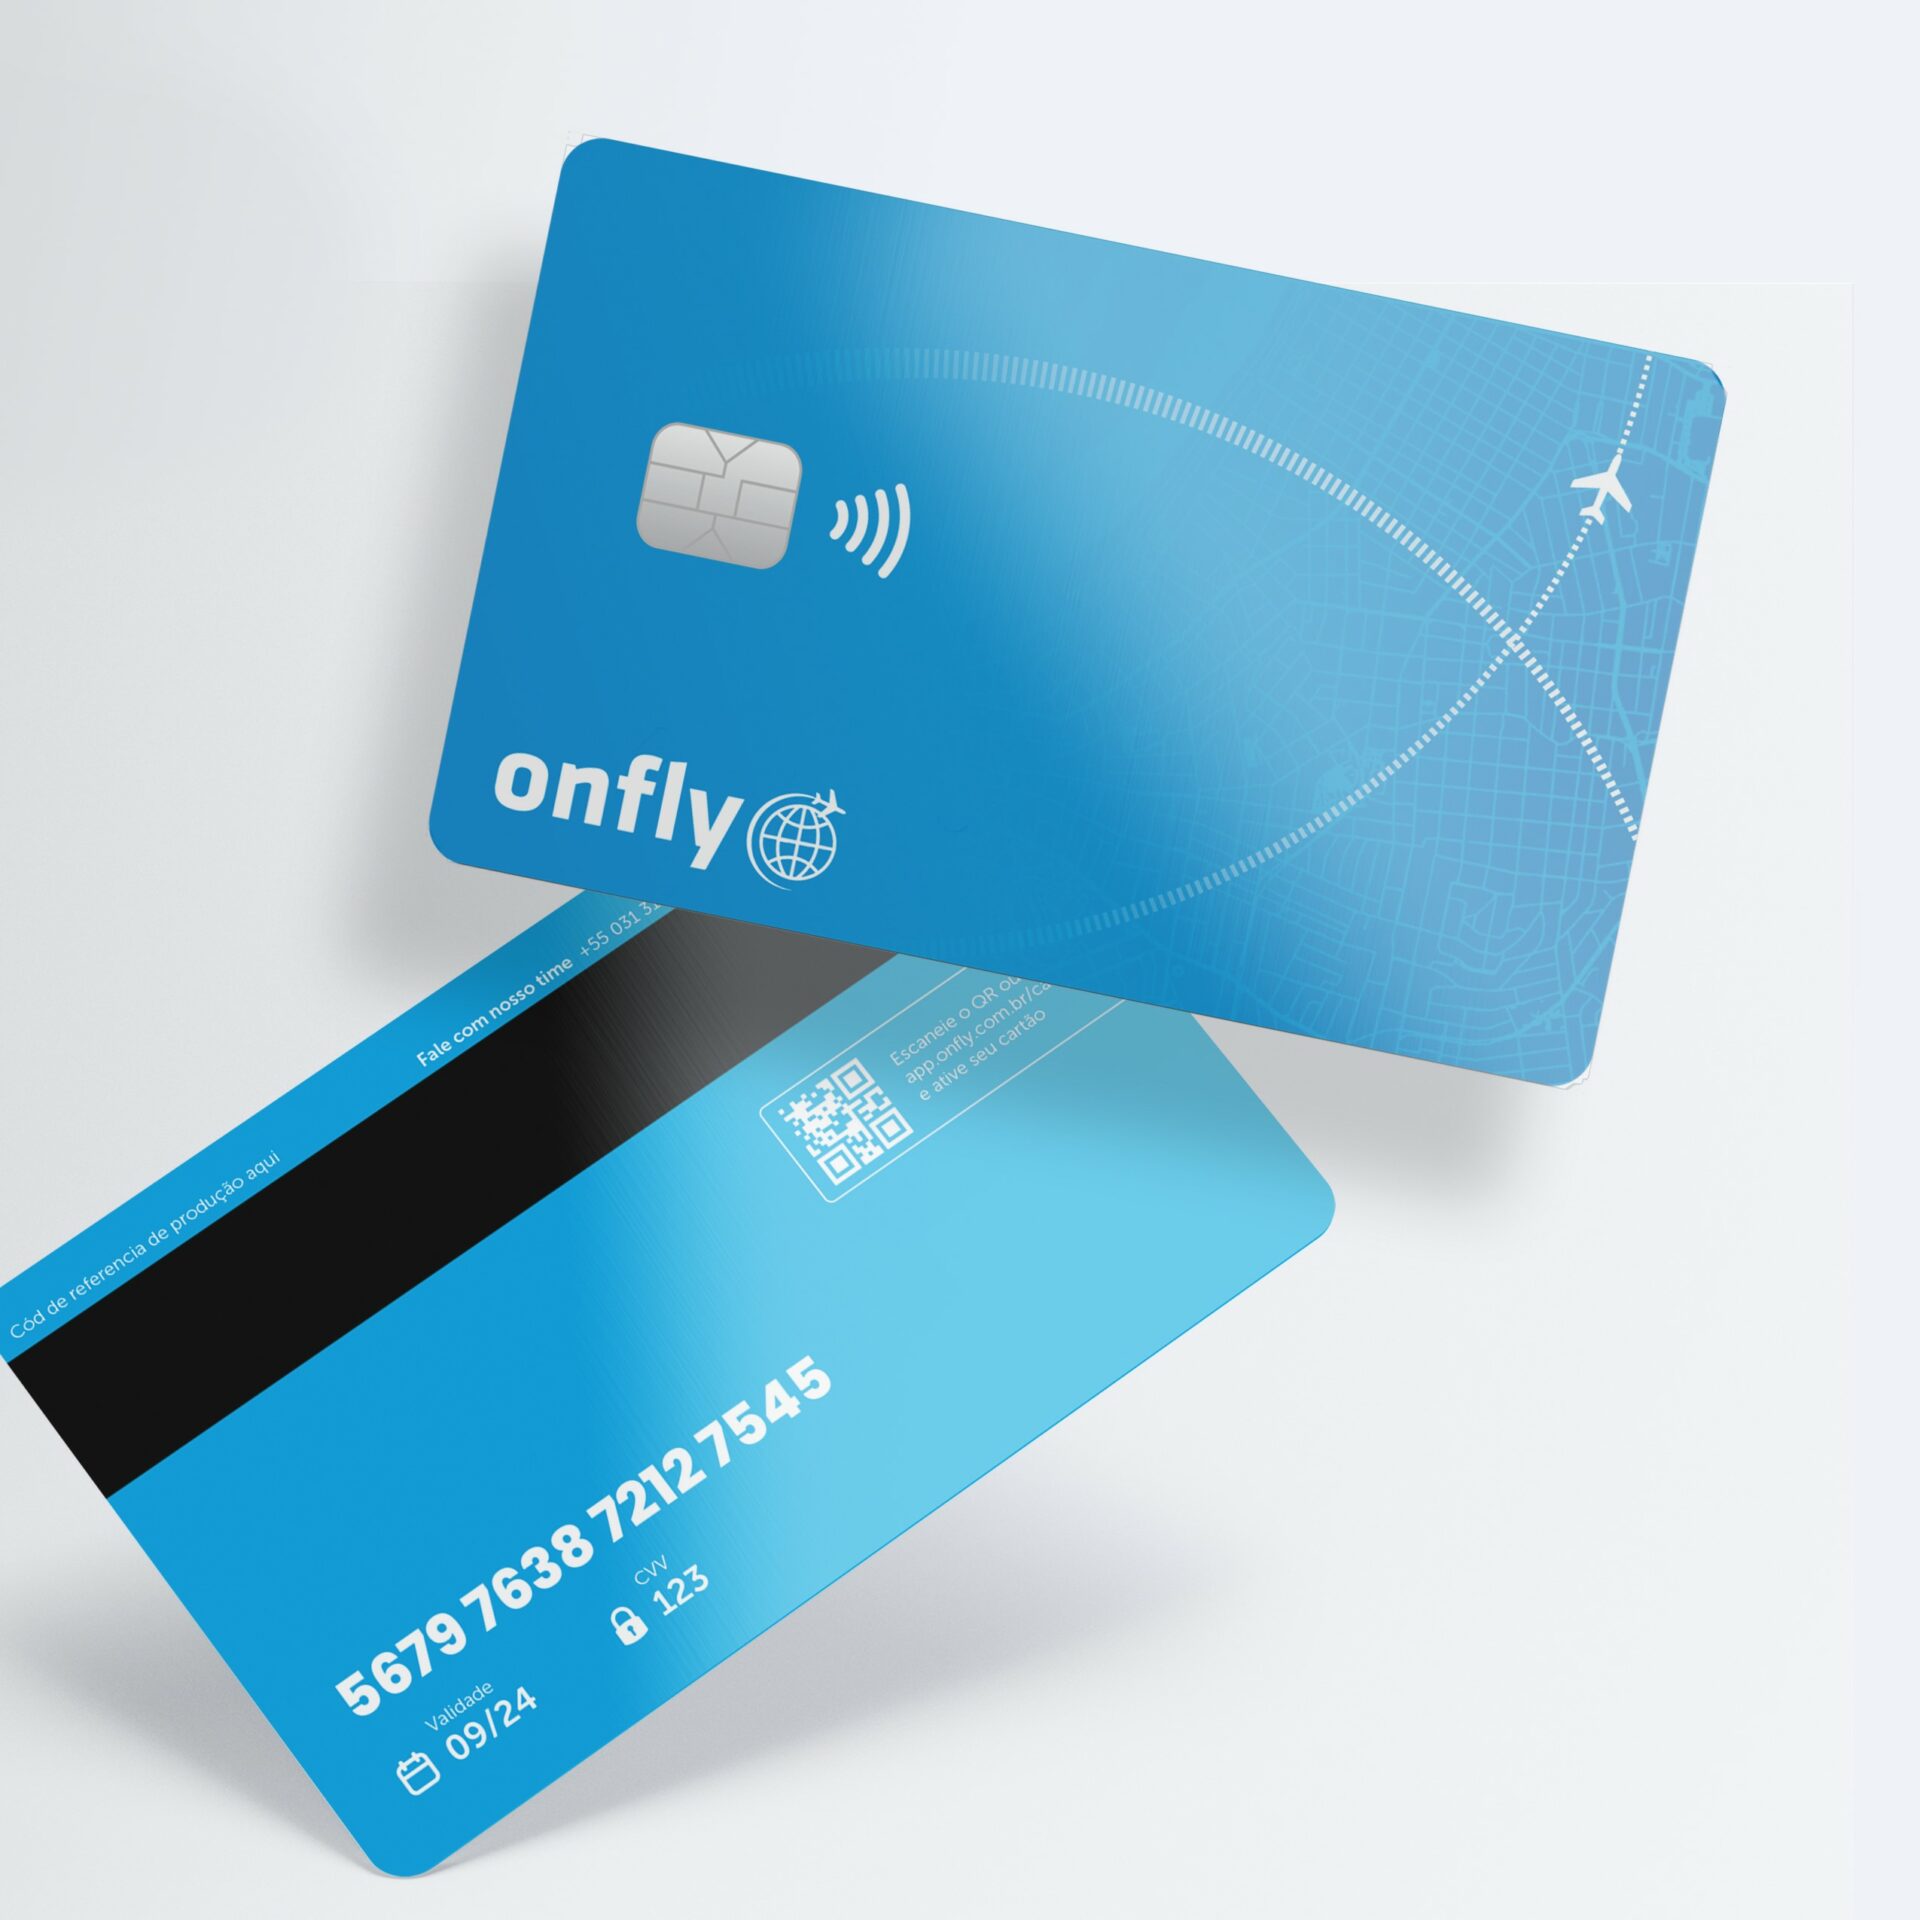 Onfly lança cartão corporativo para acabar com o reembolso de despesas em viagens